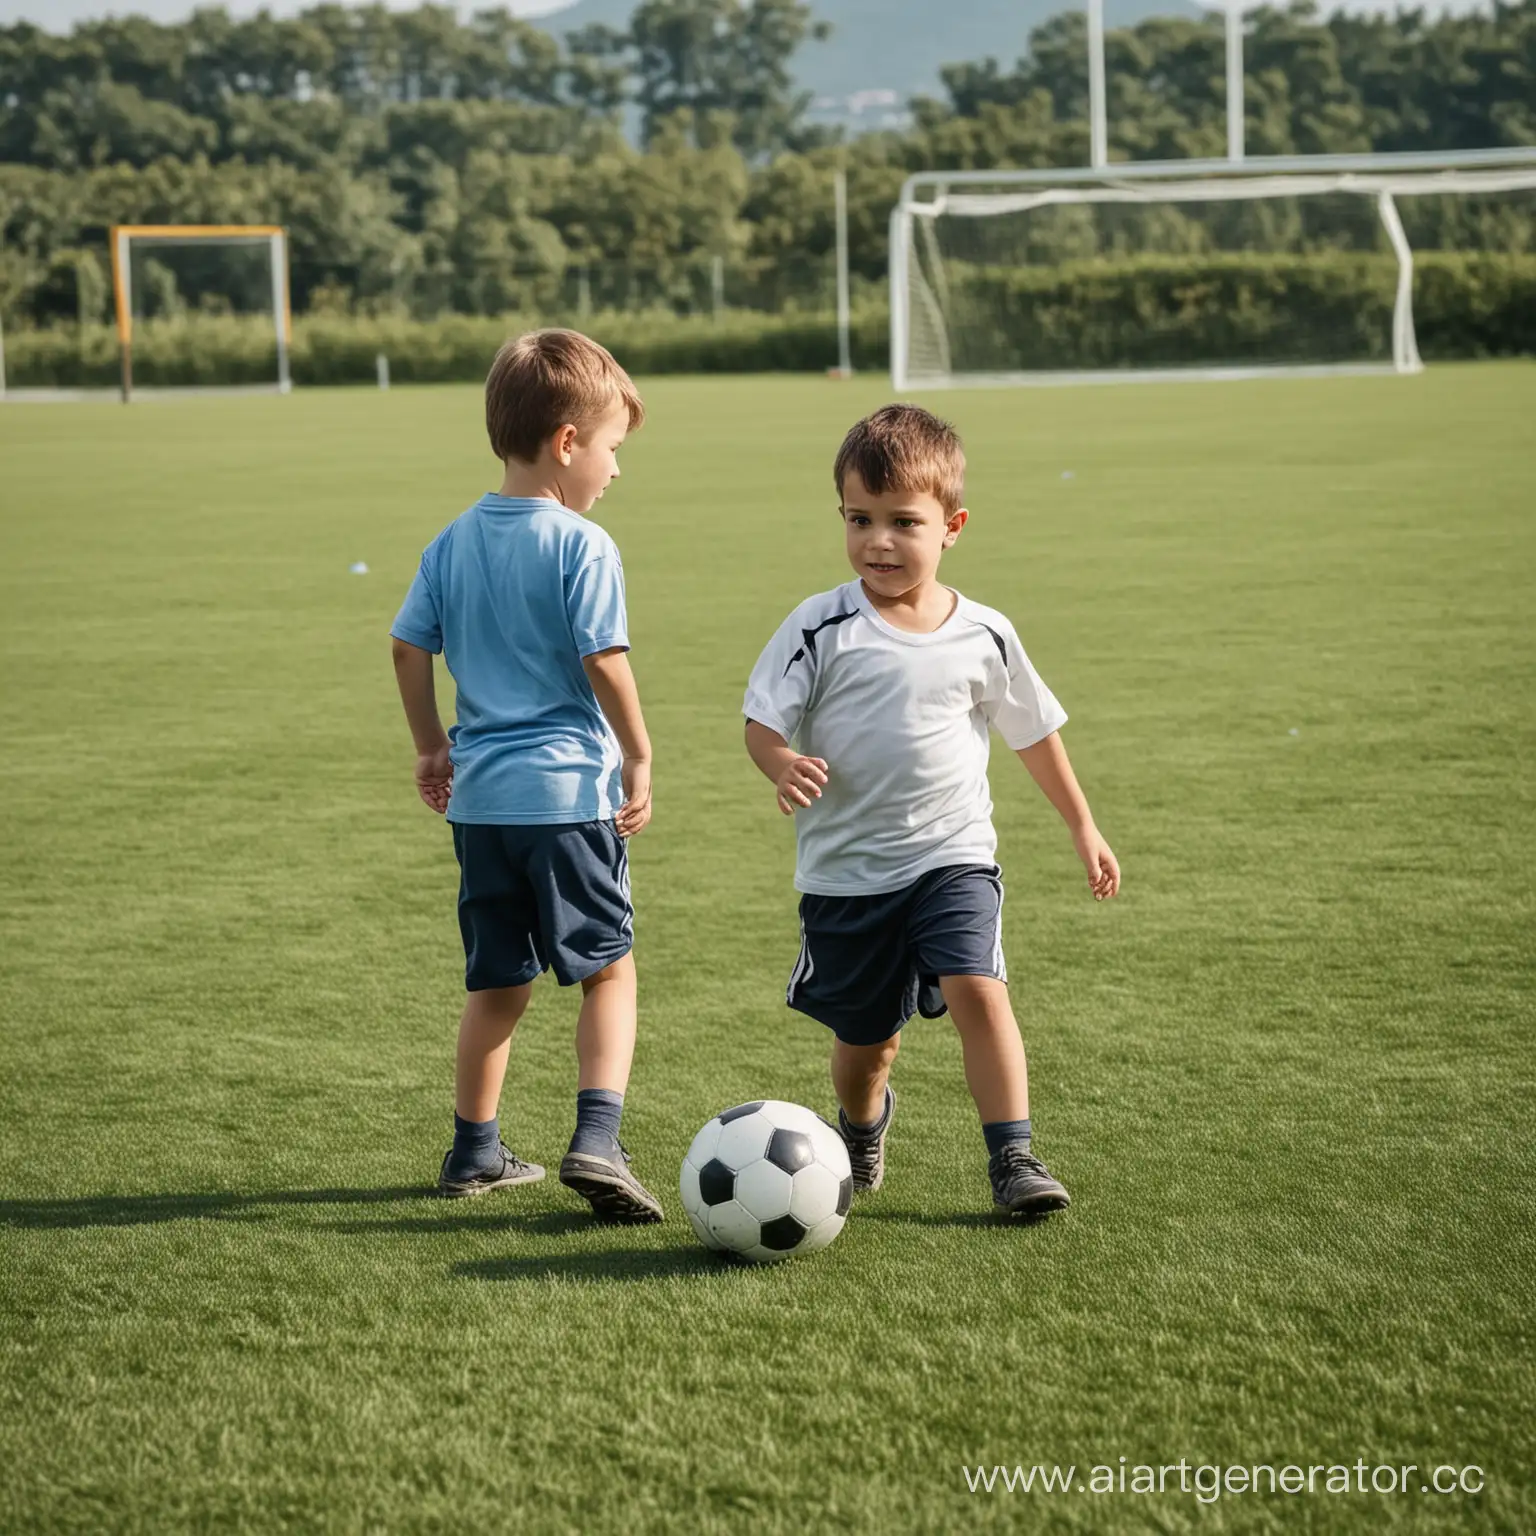 Joyful-Little-Boy-Engaged-in-Football-Match-on-Sunlit-Field